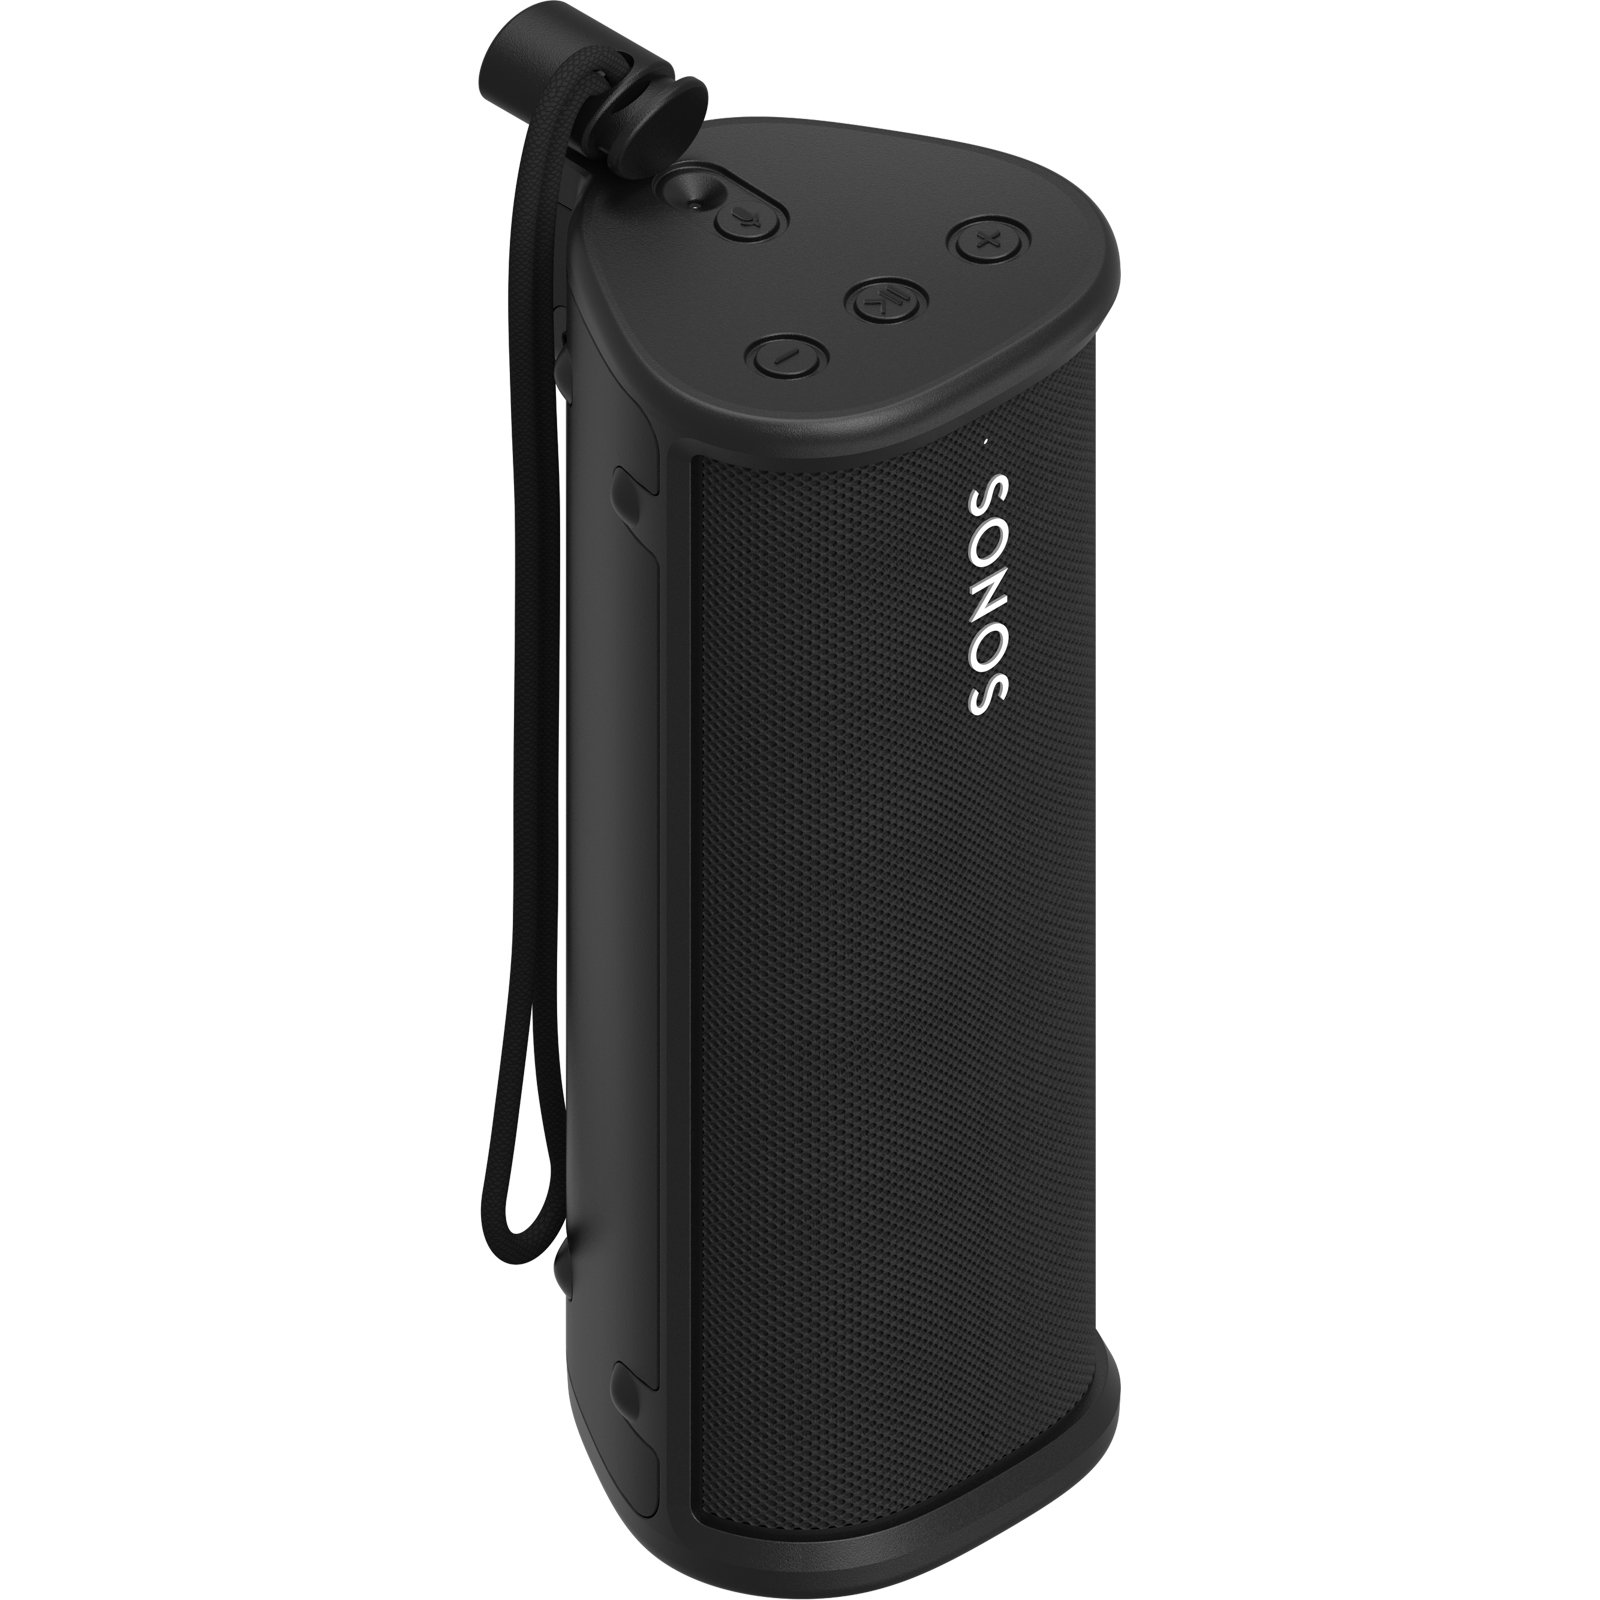 Black Sonos Roam Bluetooth Speaker Case